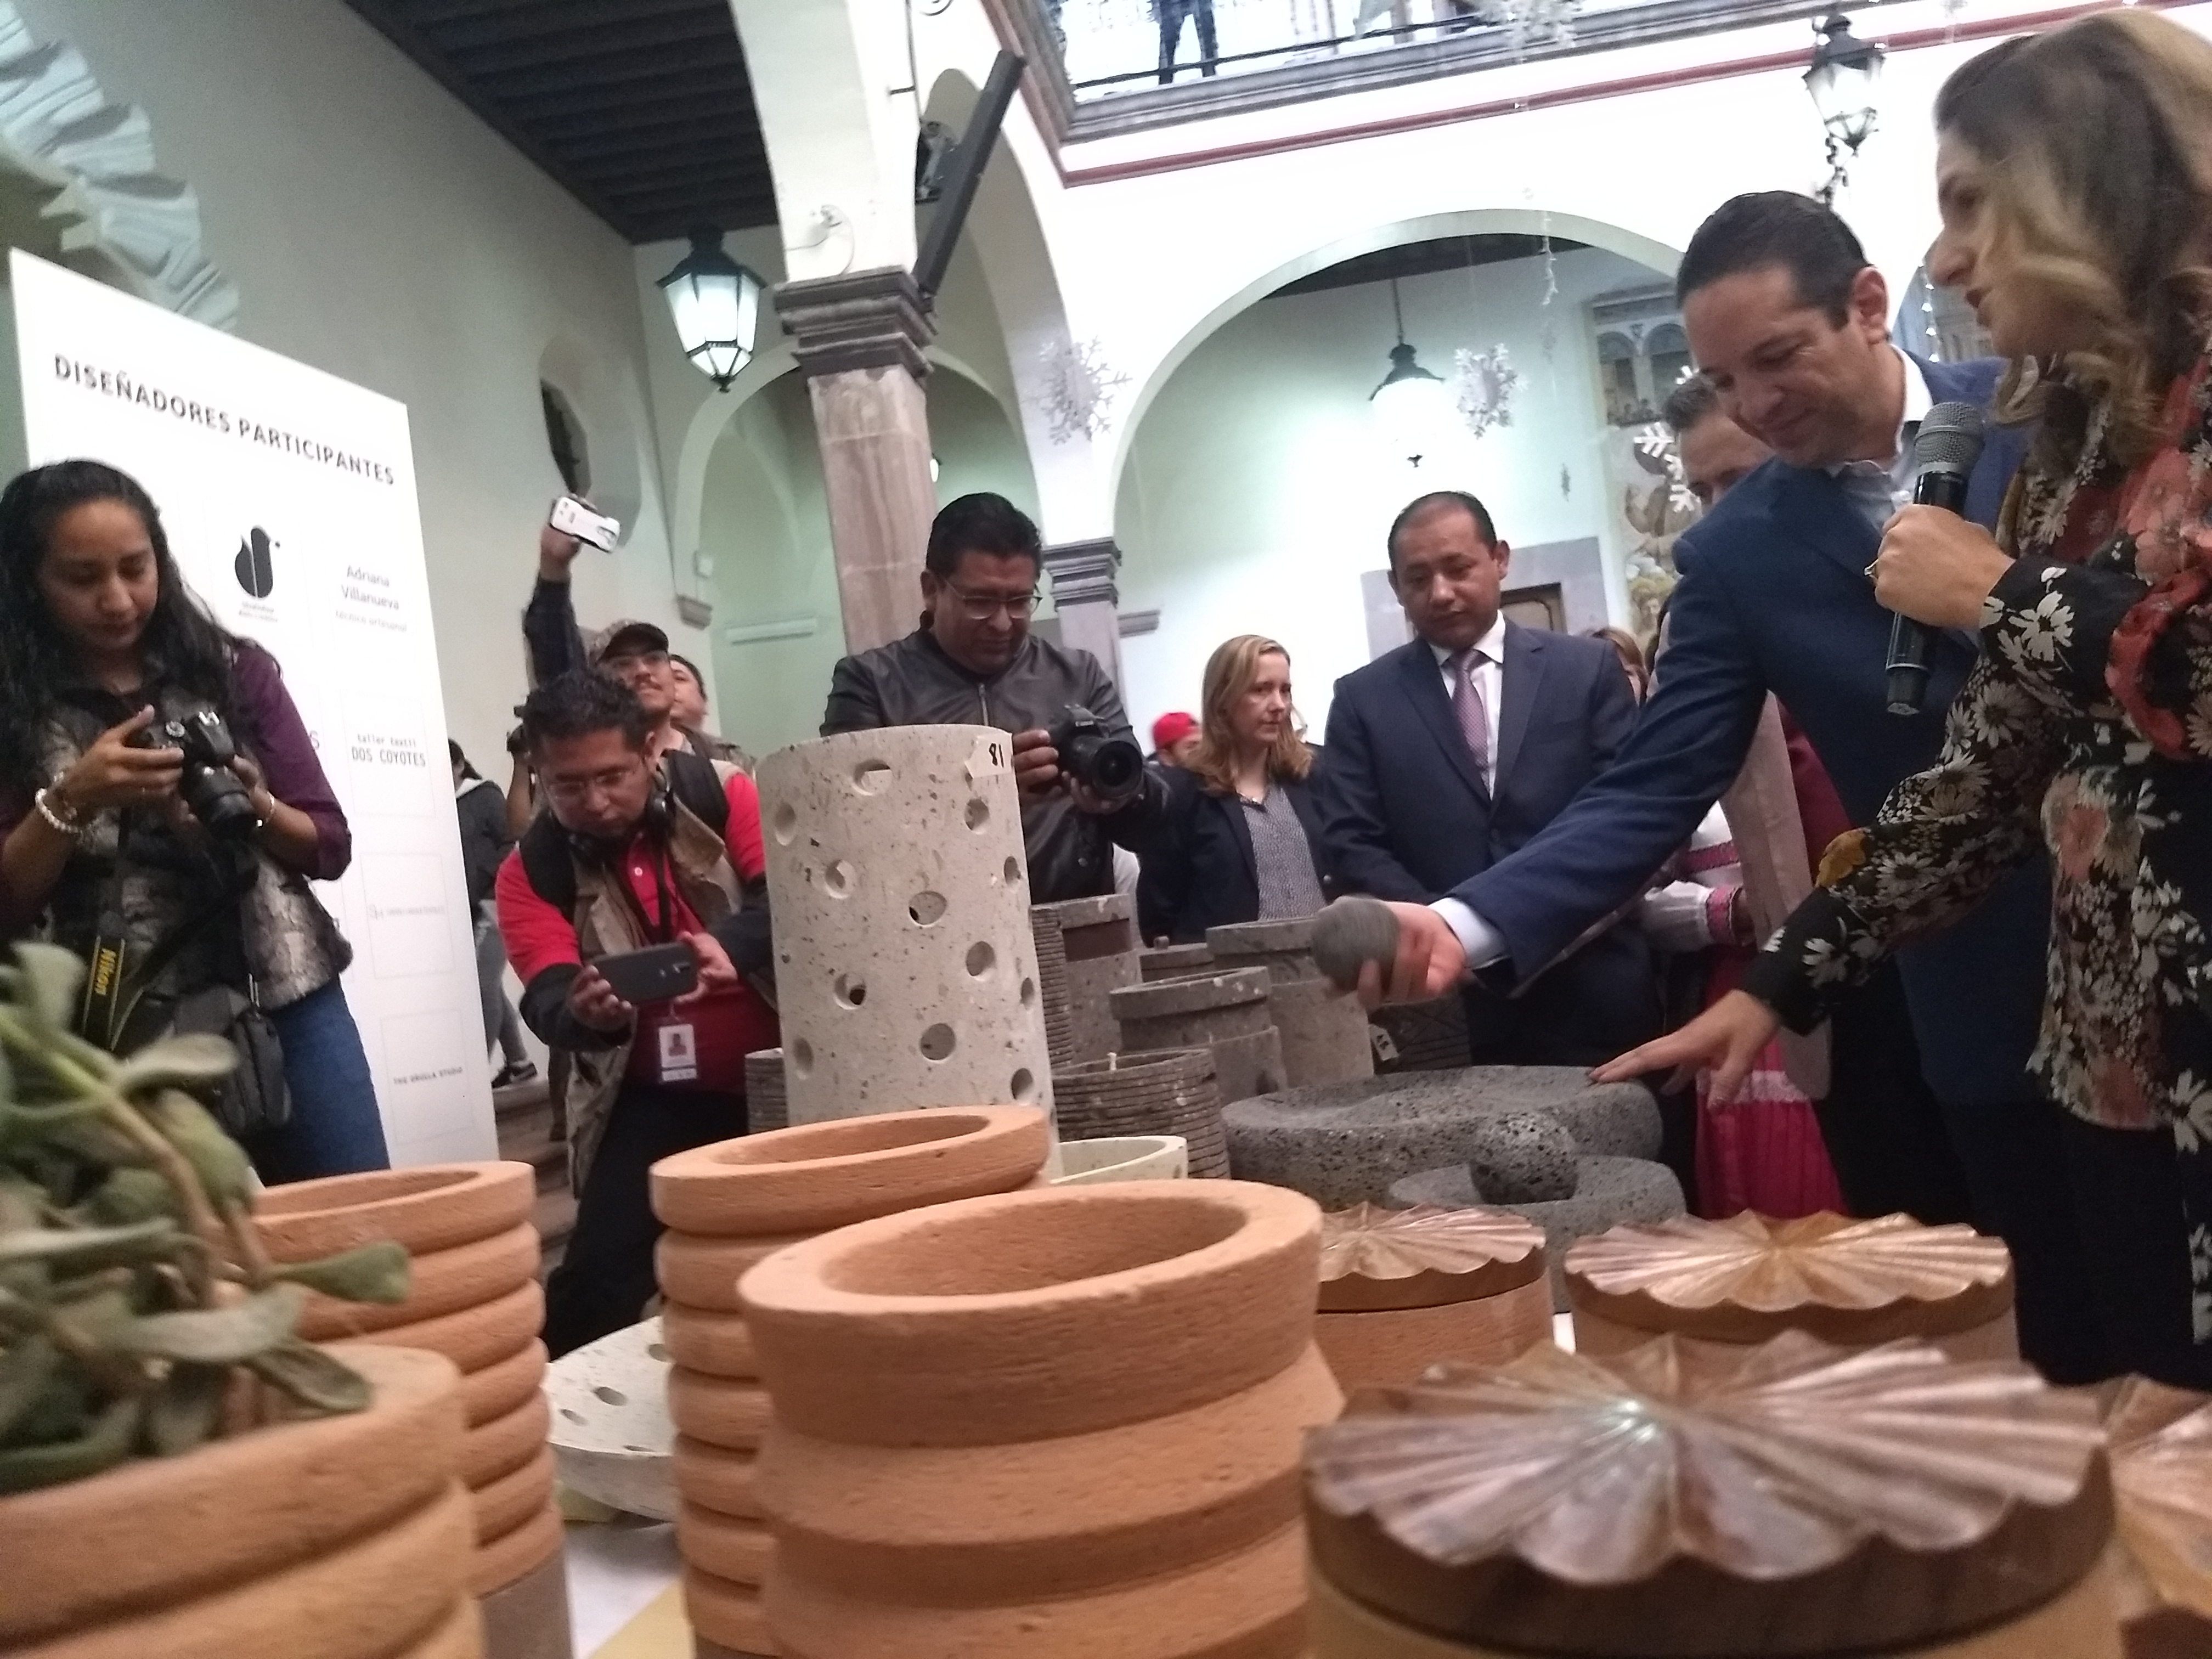  Gobierno de Querétaro lanza marca “Auténtica” para apoyar a artesanos queretanos